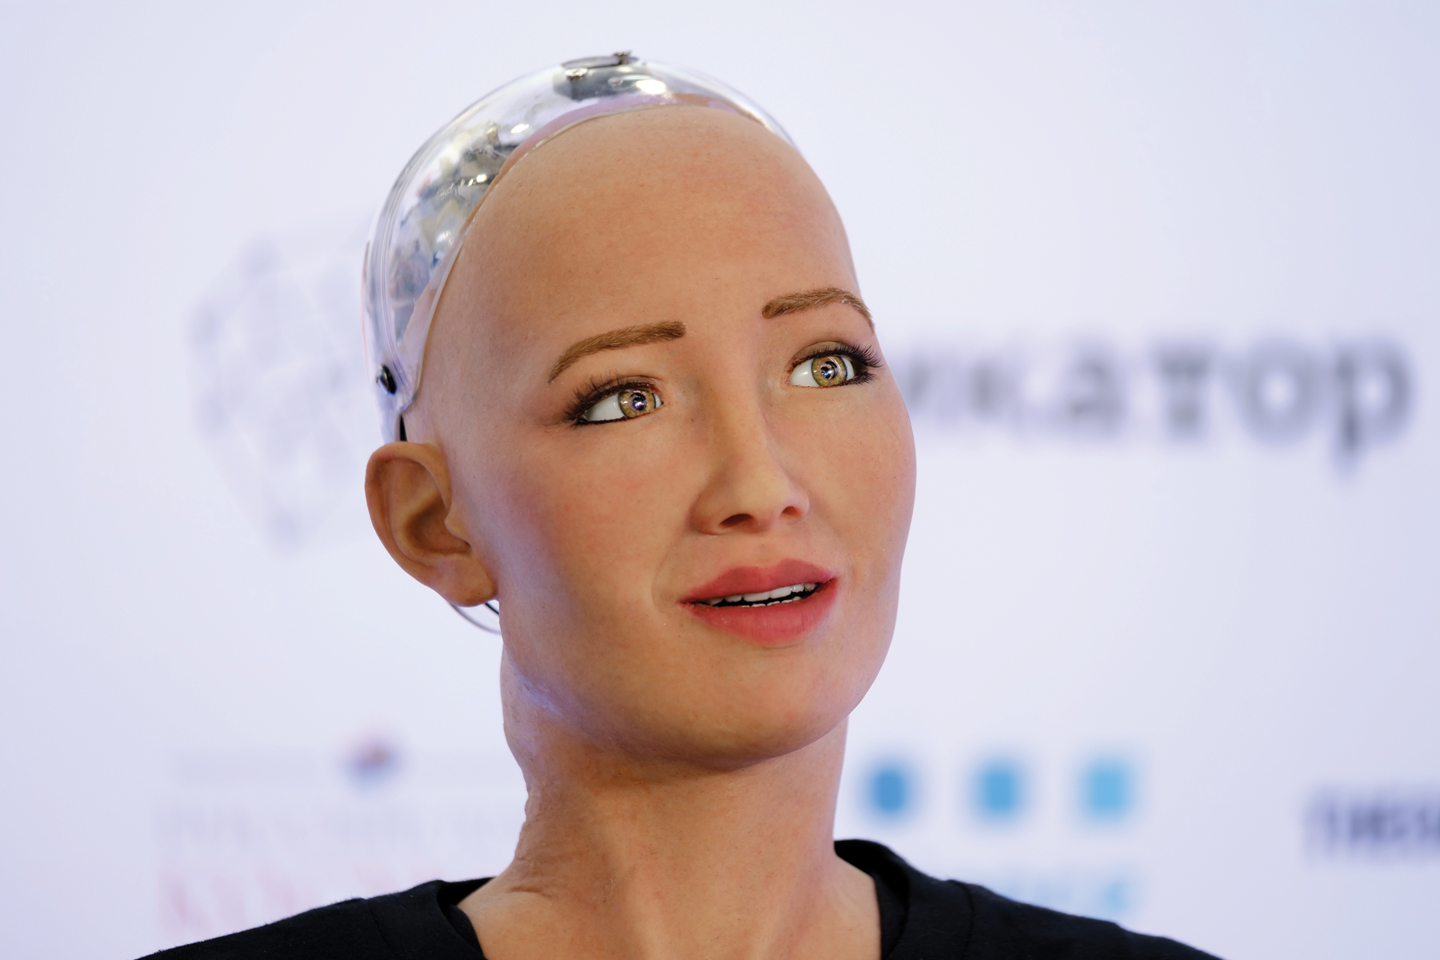 蘇菲亞由香港科技公司Hanson Robotics研發，面世後遭楊立昆（Yann LeCunn）等知名人工智能學者批評為一場炒作<em> （Anton Gvozdikov / Shutterstock.com）</em>